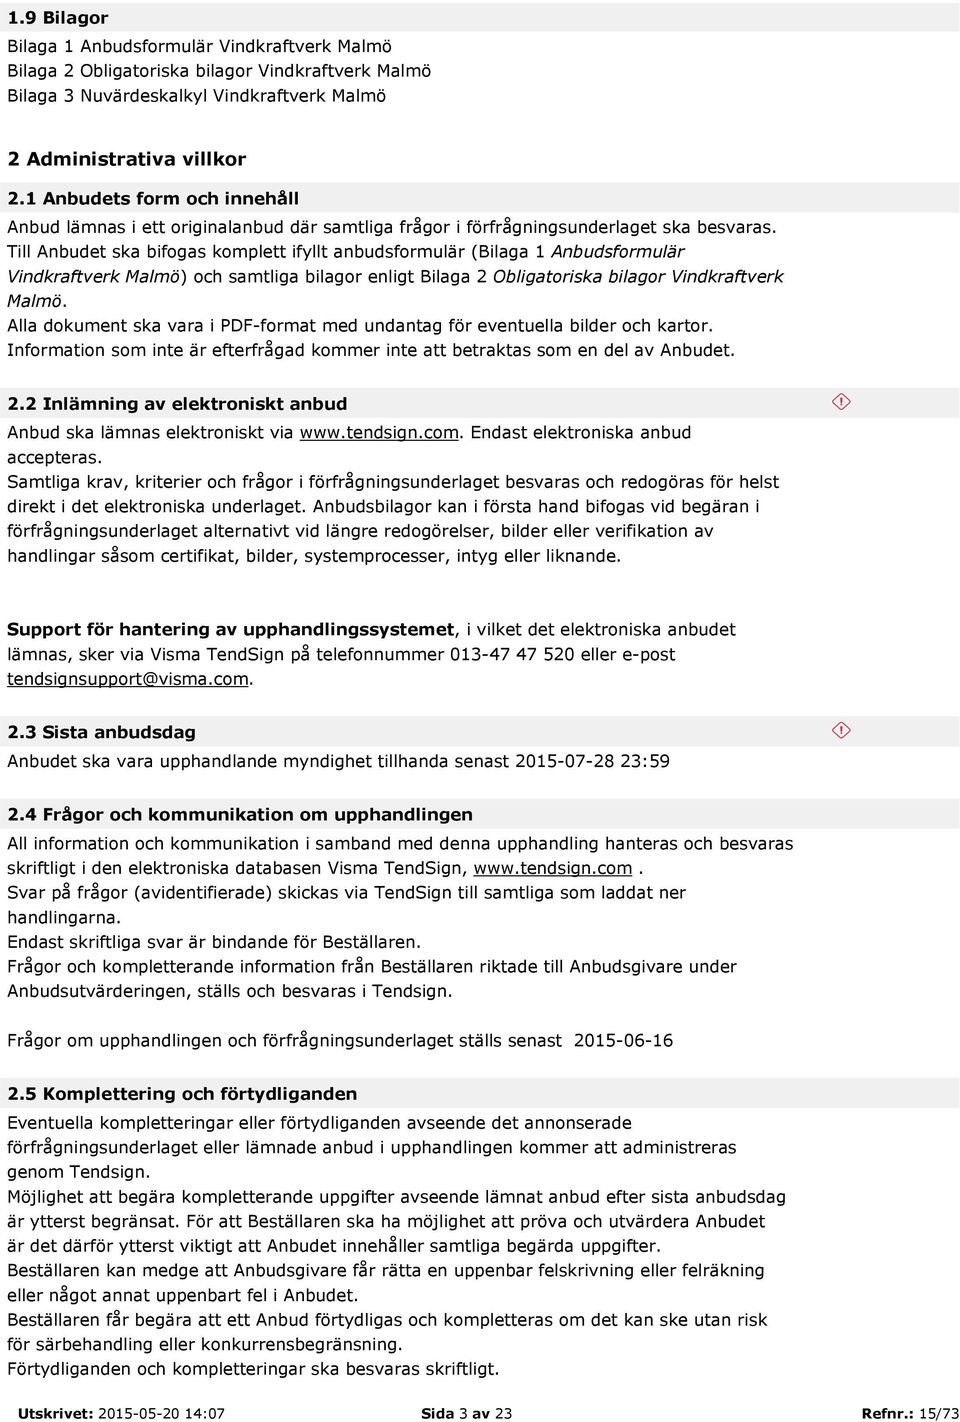 Till Anbudet ska bifogas komplett ifyllt anbudsformulär (Bilaga 1 Anbudsformulär Vindkraftverk Malmö) och samtliga bilagor enligt Bilaga 2 Obligatoriska bilagor Vindkraftverk Malmö.